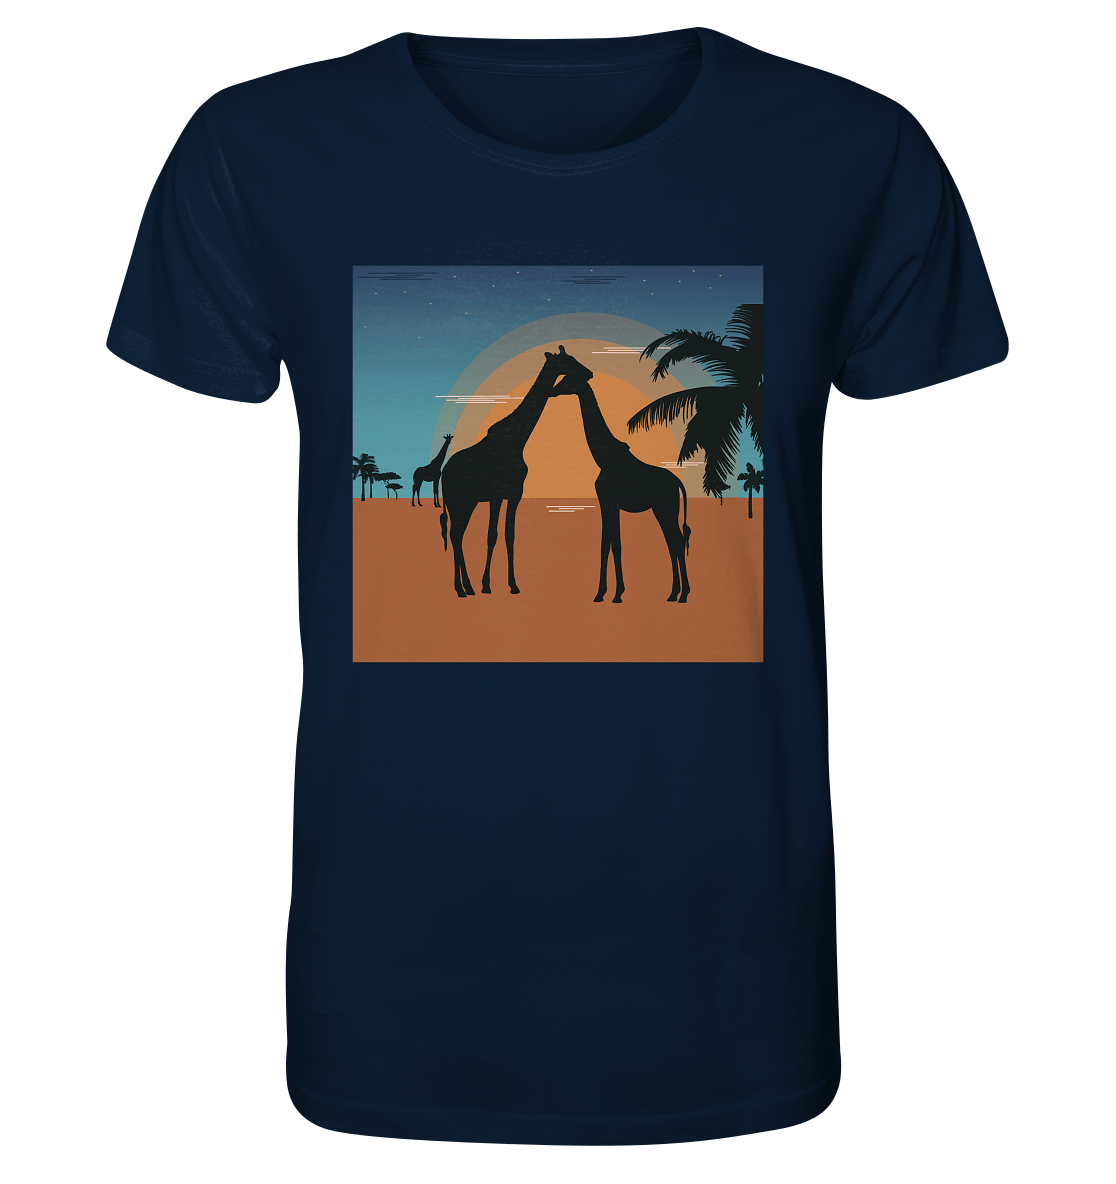 Herren T-Shirt mit Giraffen Design Shirt in navy blau mit Giraffen Front Print